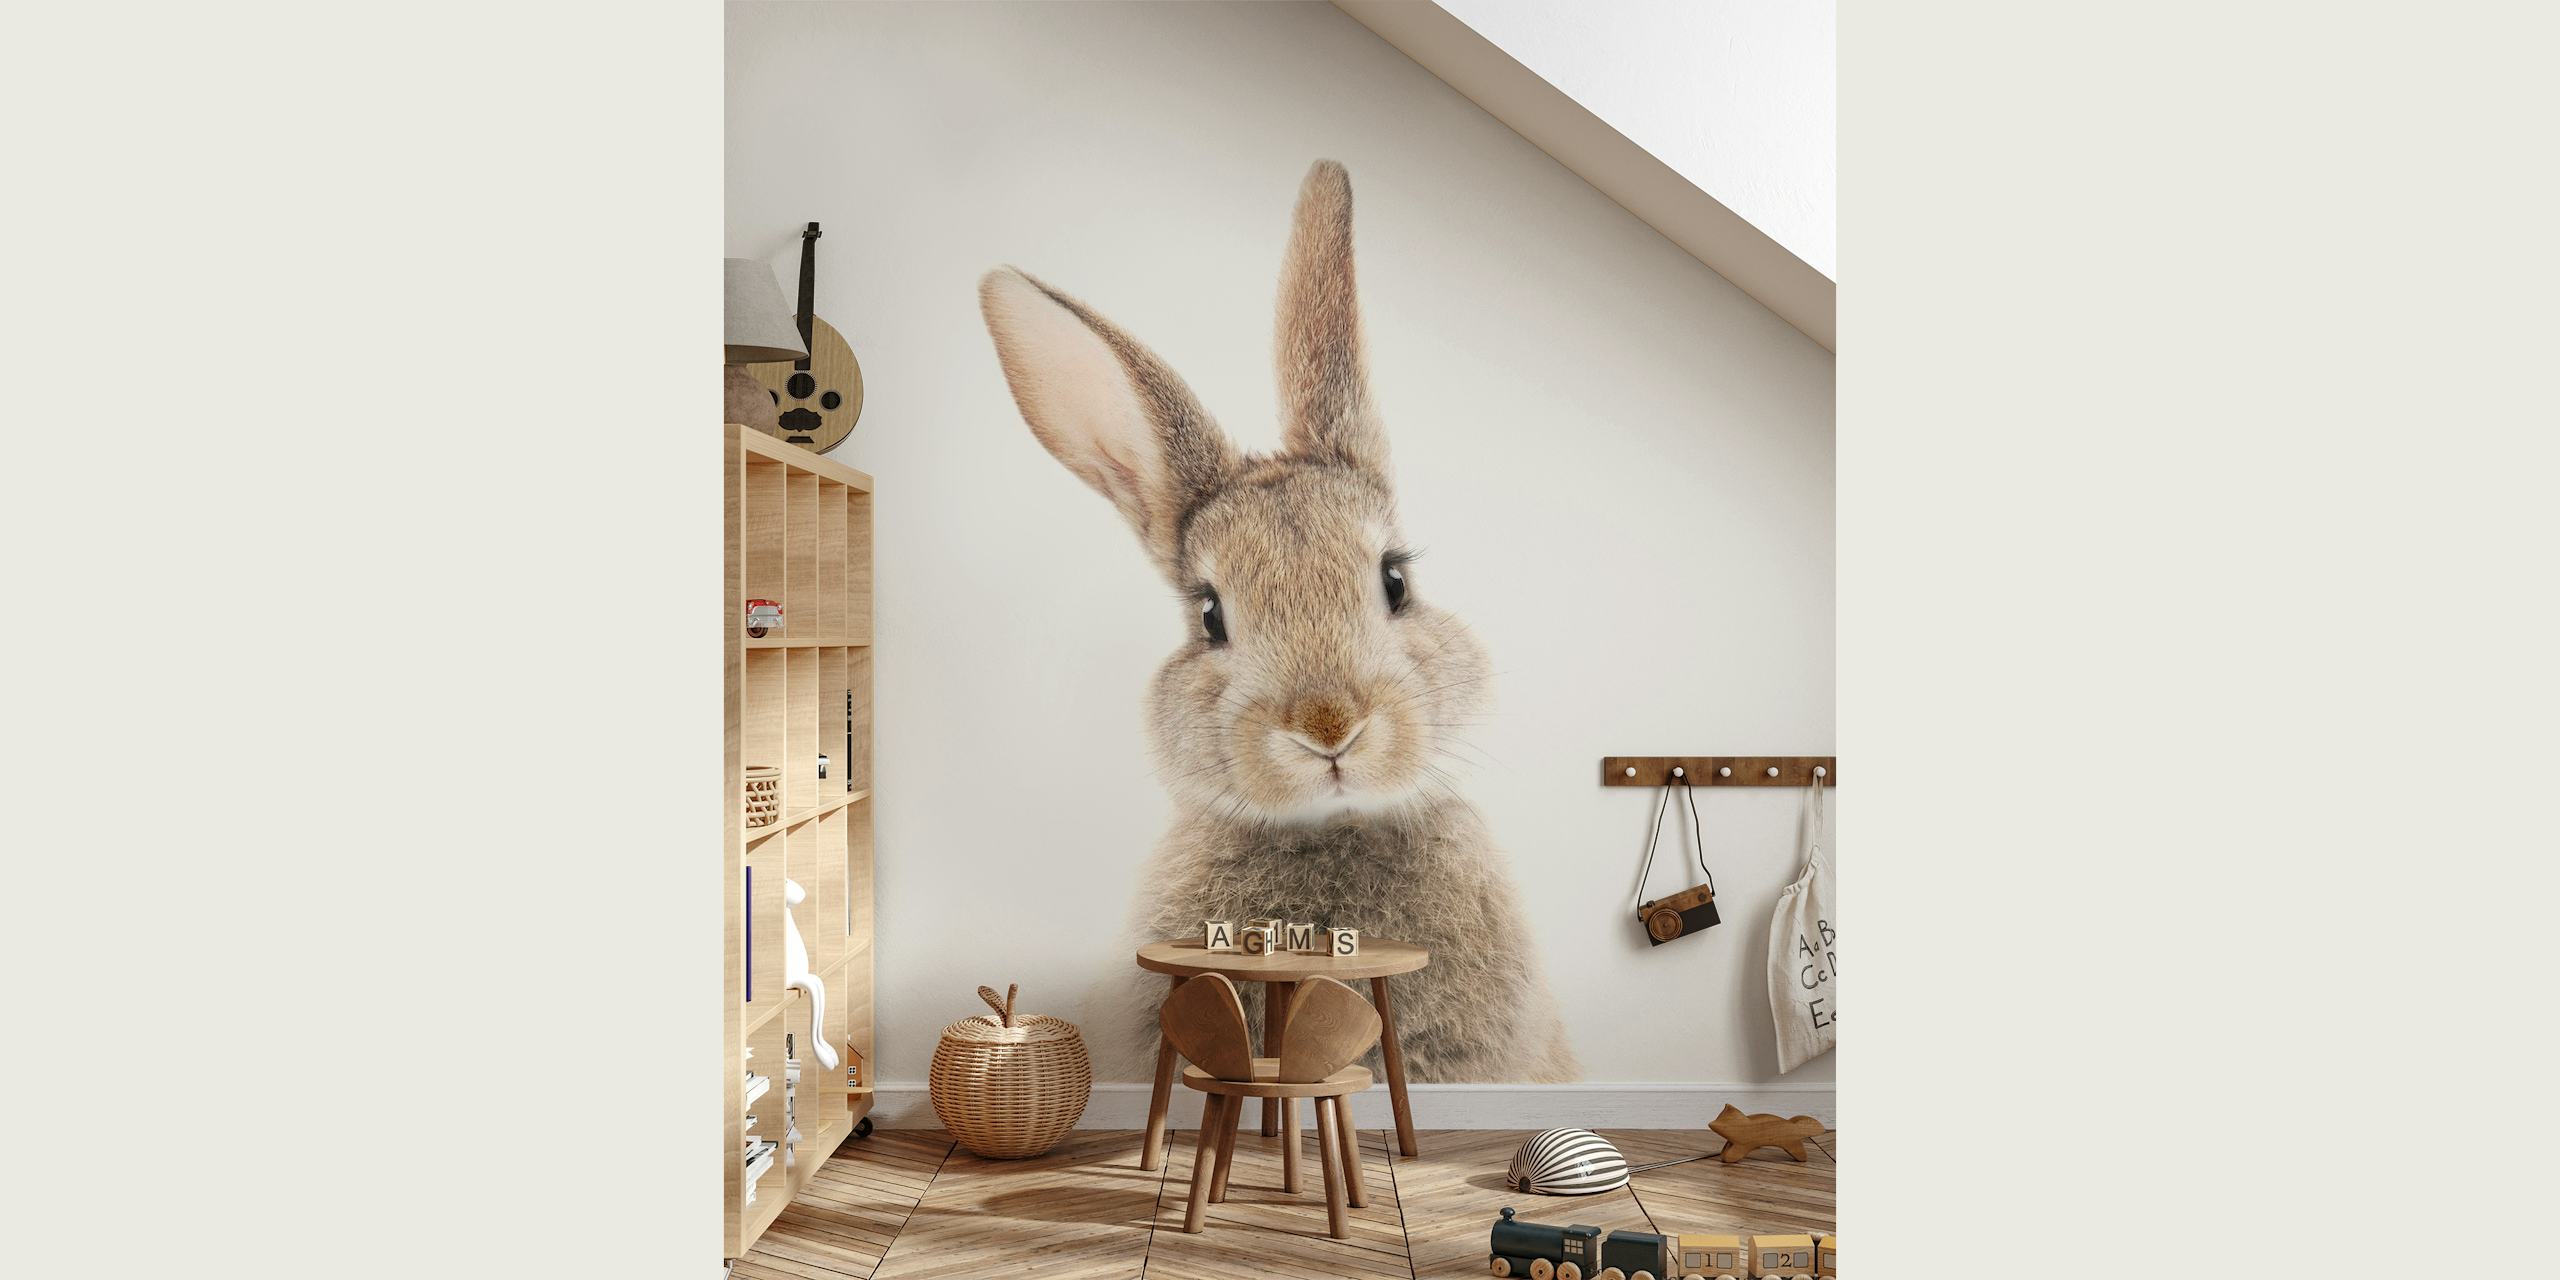 Urocza fototapeta z króliczkiem Peekaboo do zabawnego wystroju wnętrz